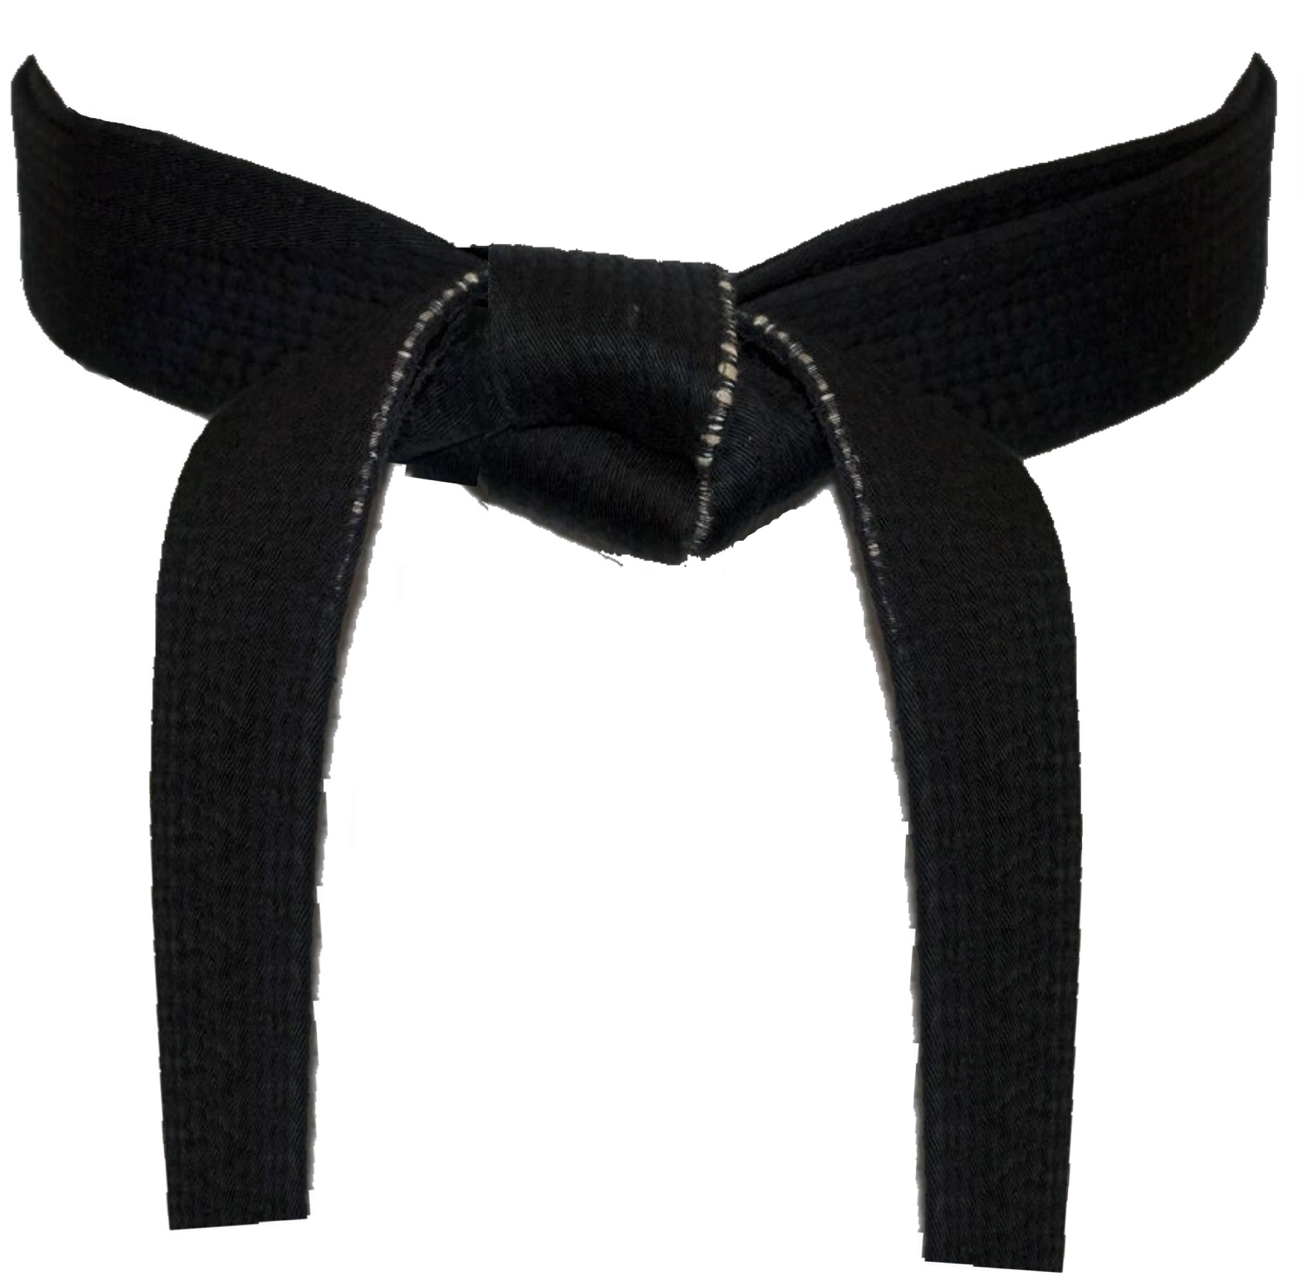 Best Of karate black belt Championship belts: abc of karate black belt